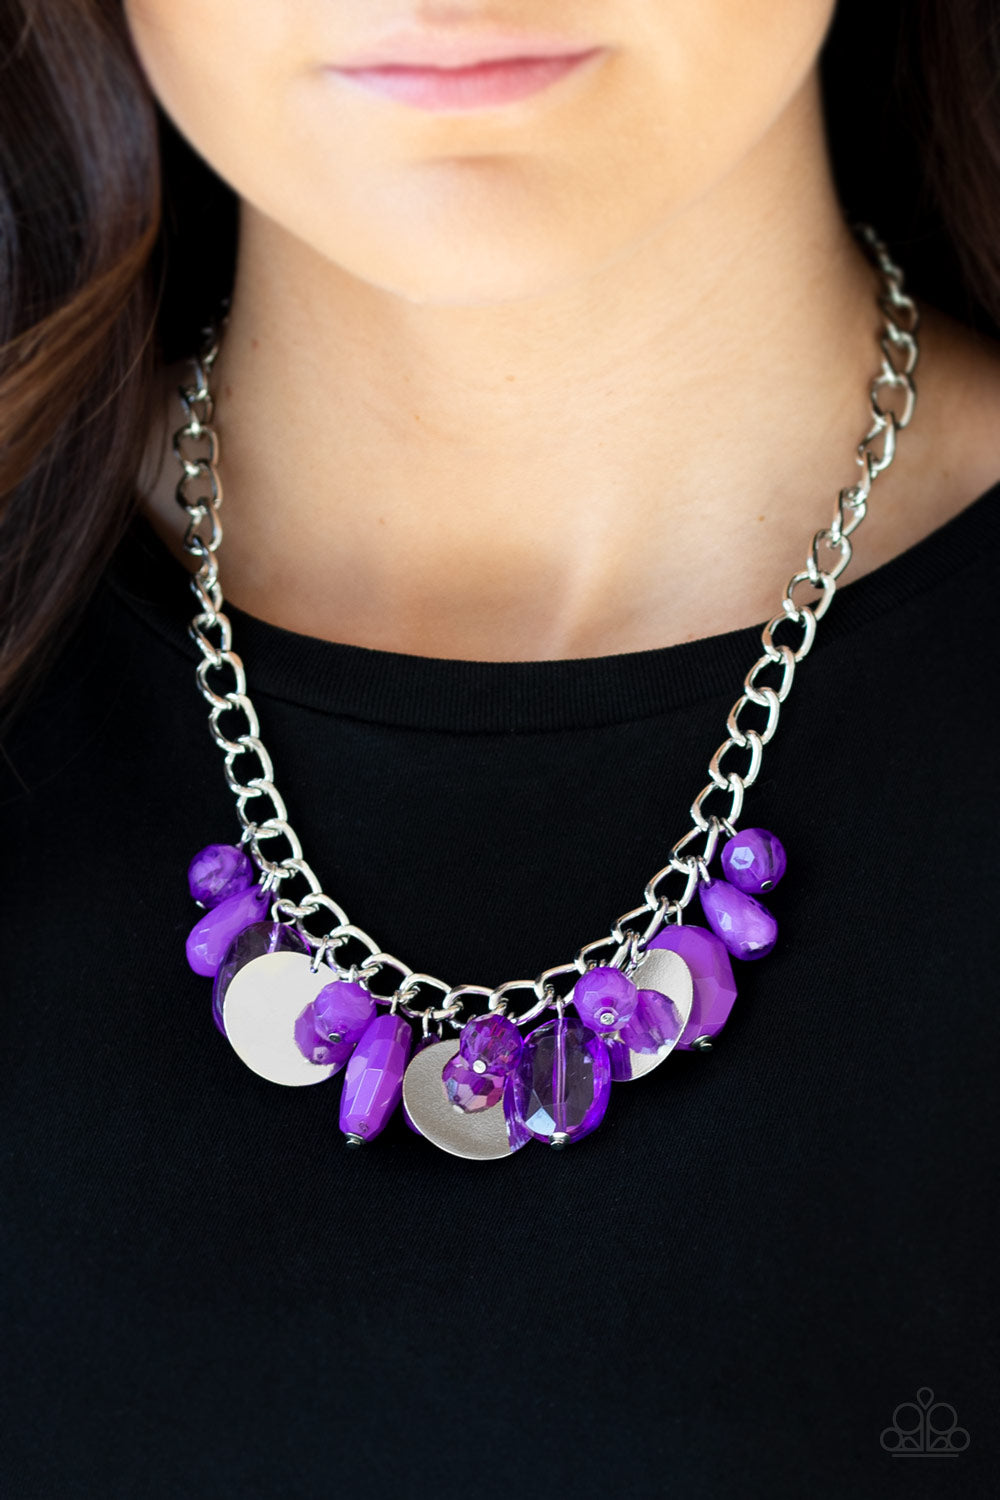 Paparazzi Treasure Shore - Purple Necklace